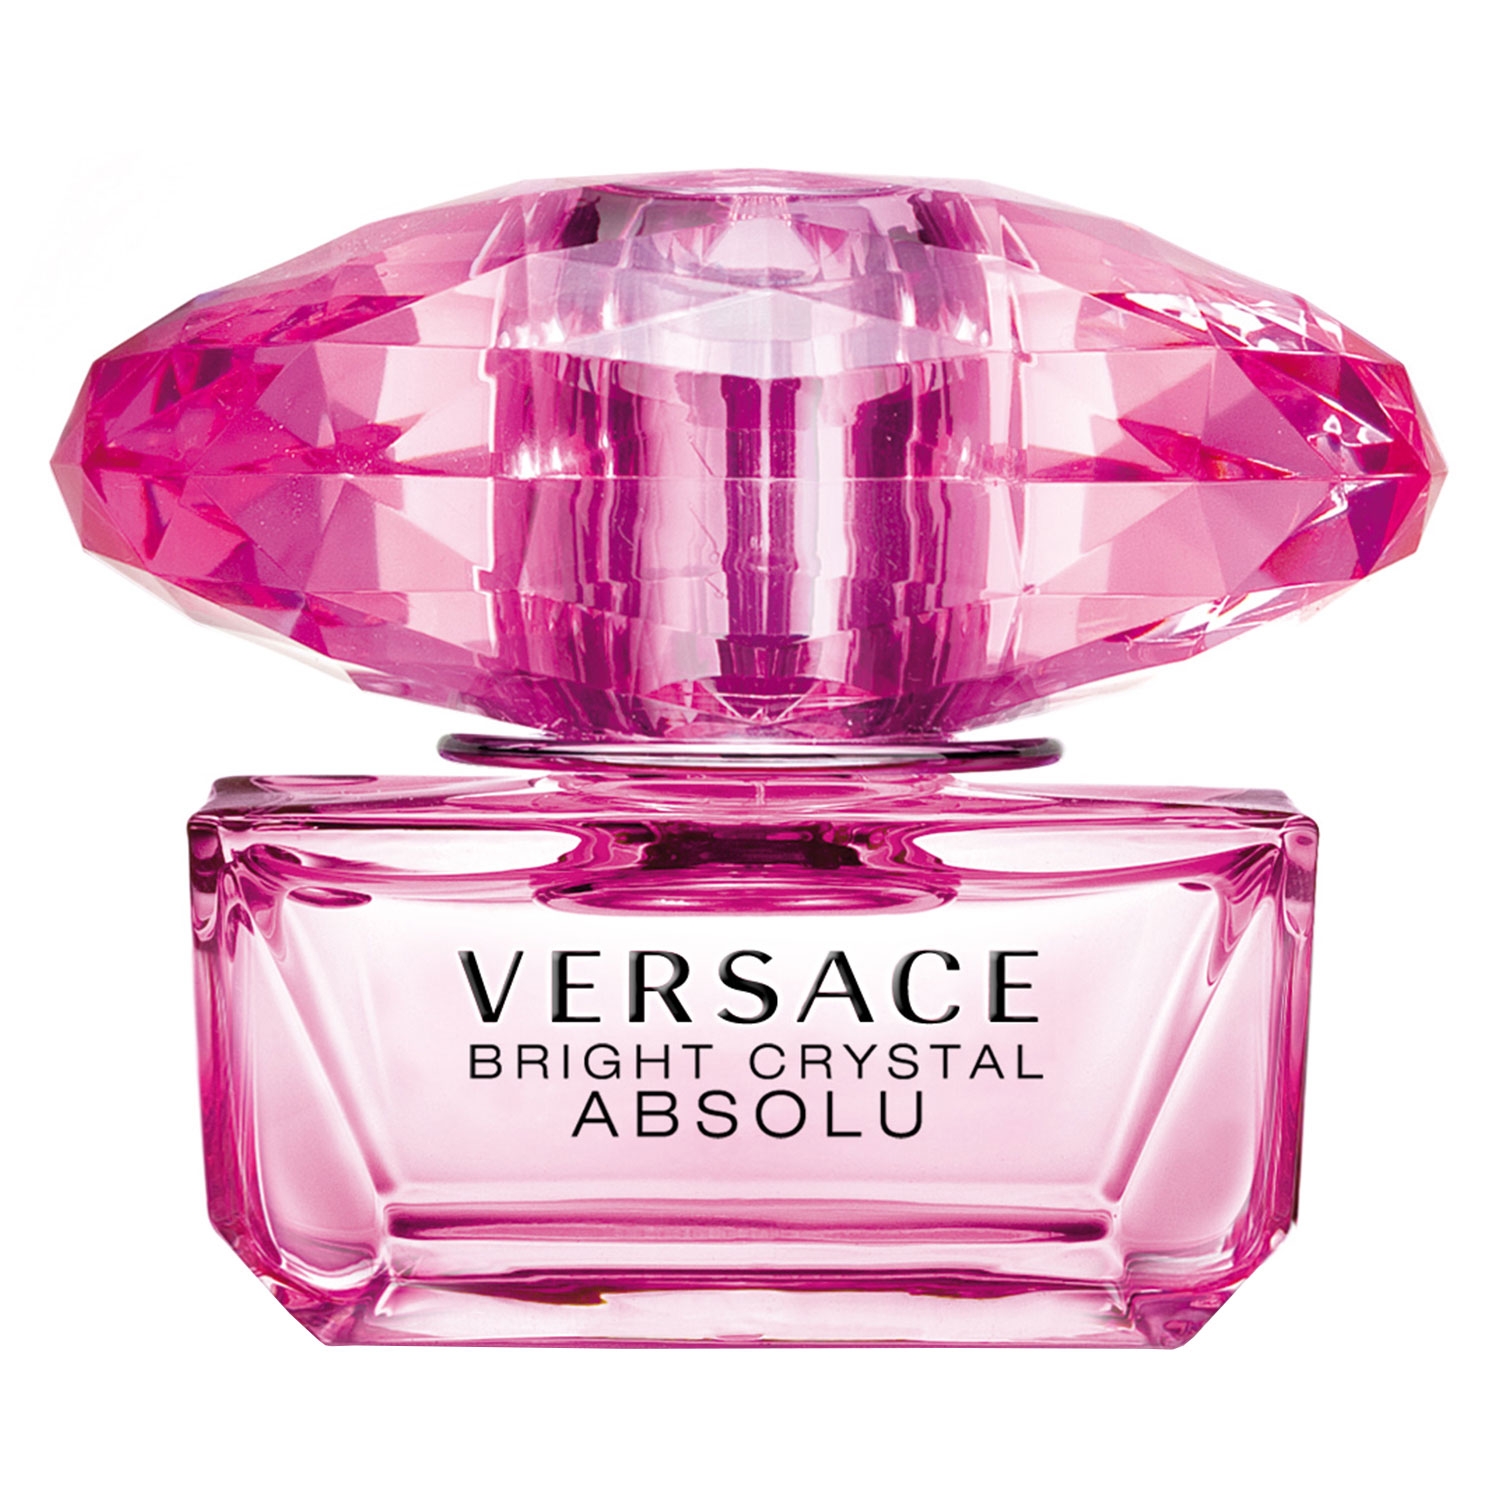 Produktbild von Bright Crystal - Absolu Eau de Parfum